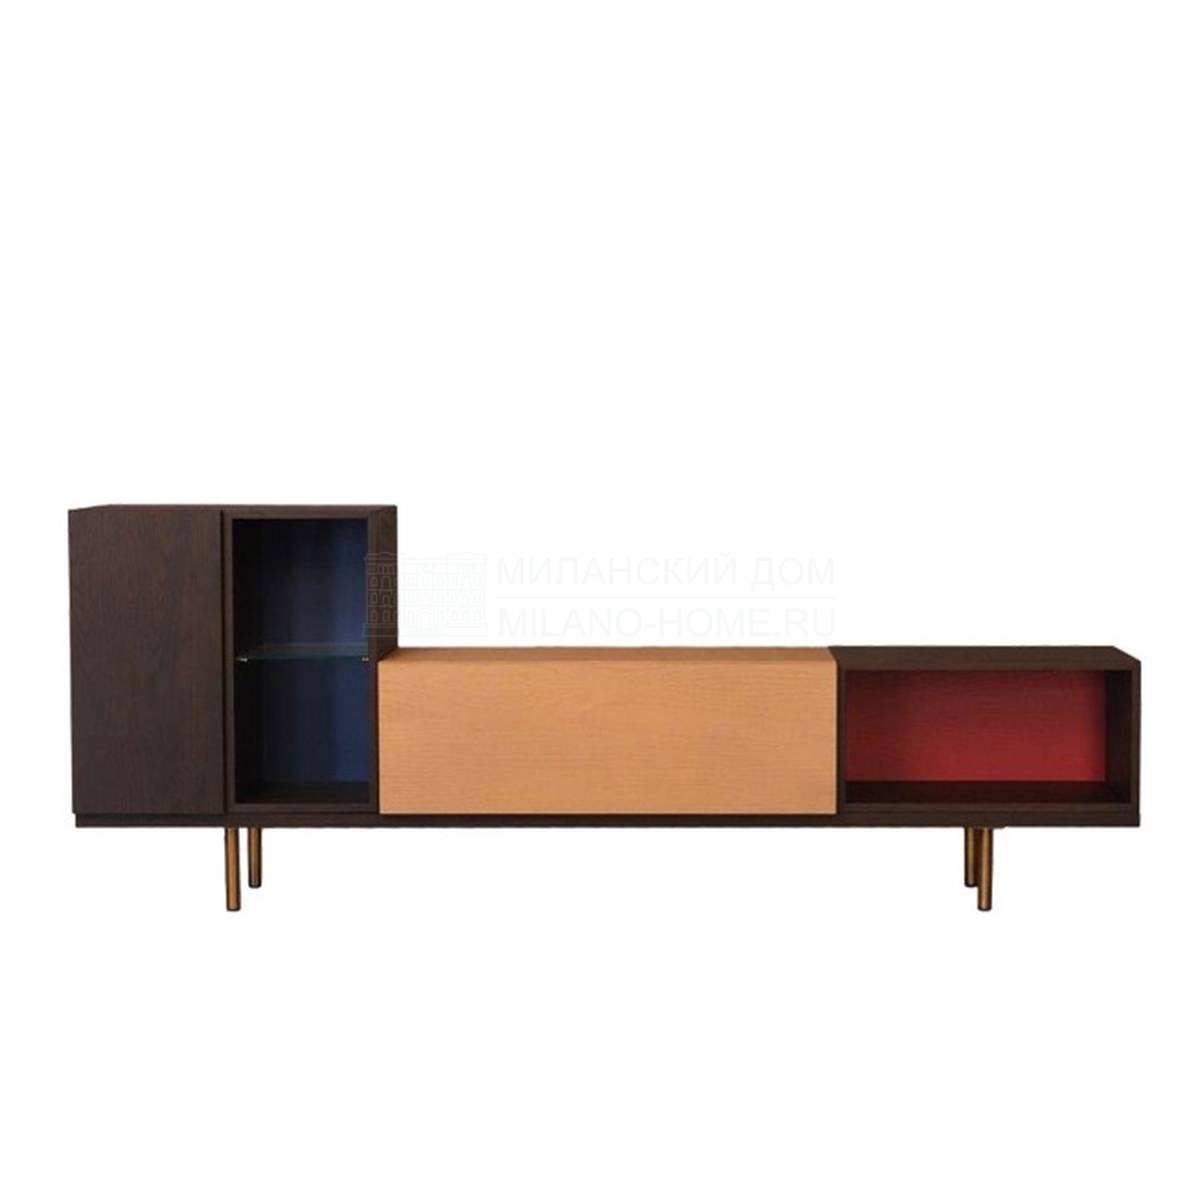 Мебель для ТВ Credenza Swing / art.1730F из Италии фабрики MORELATO